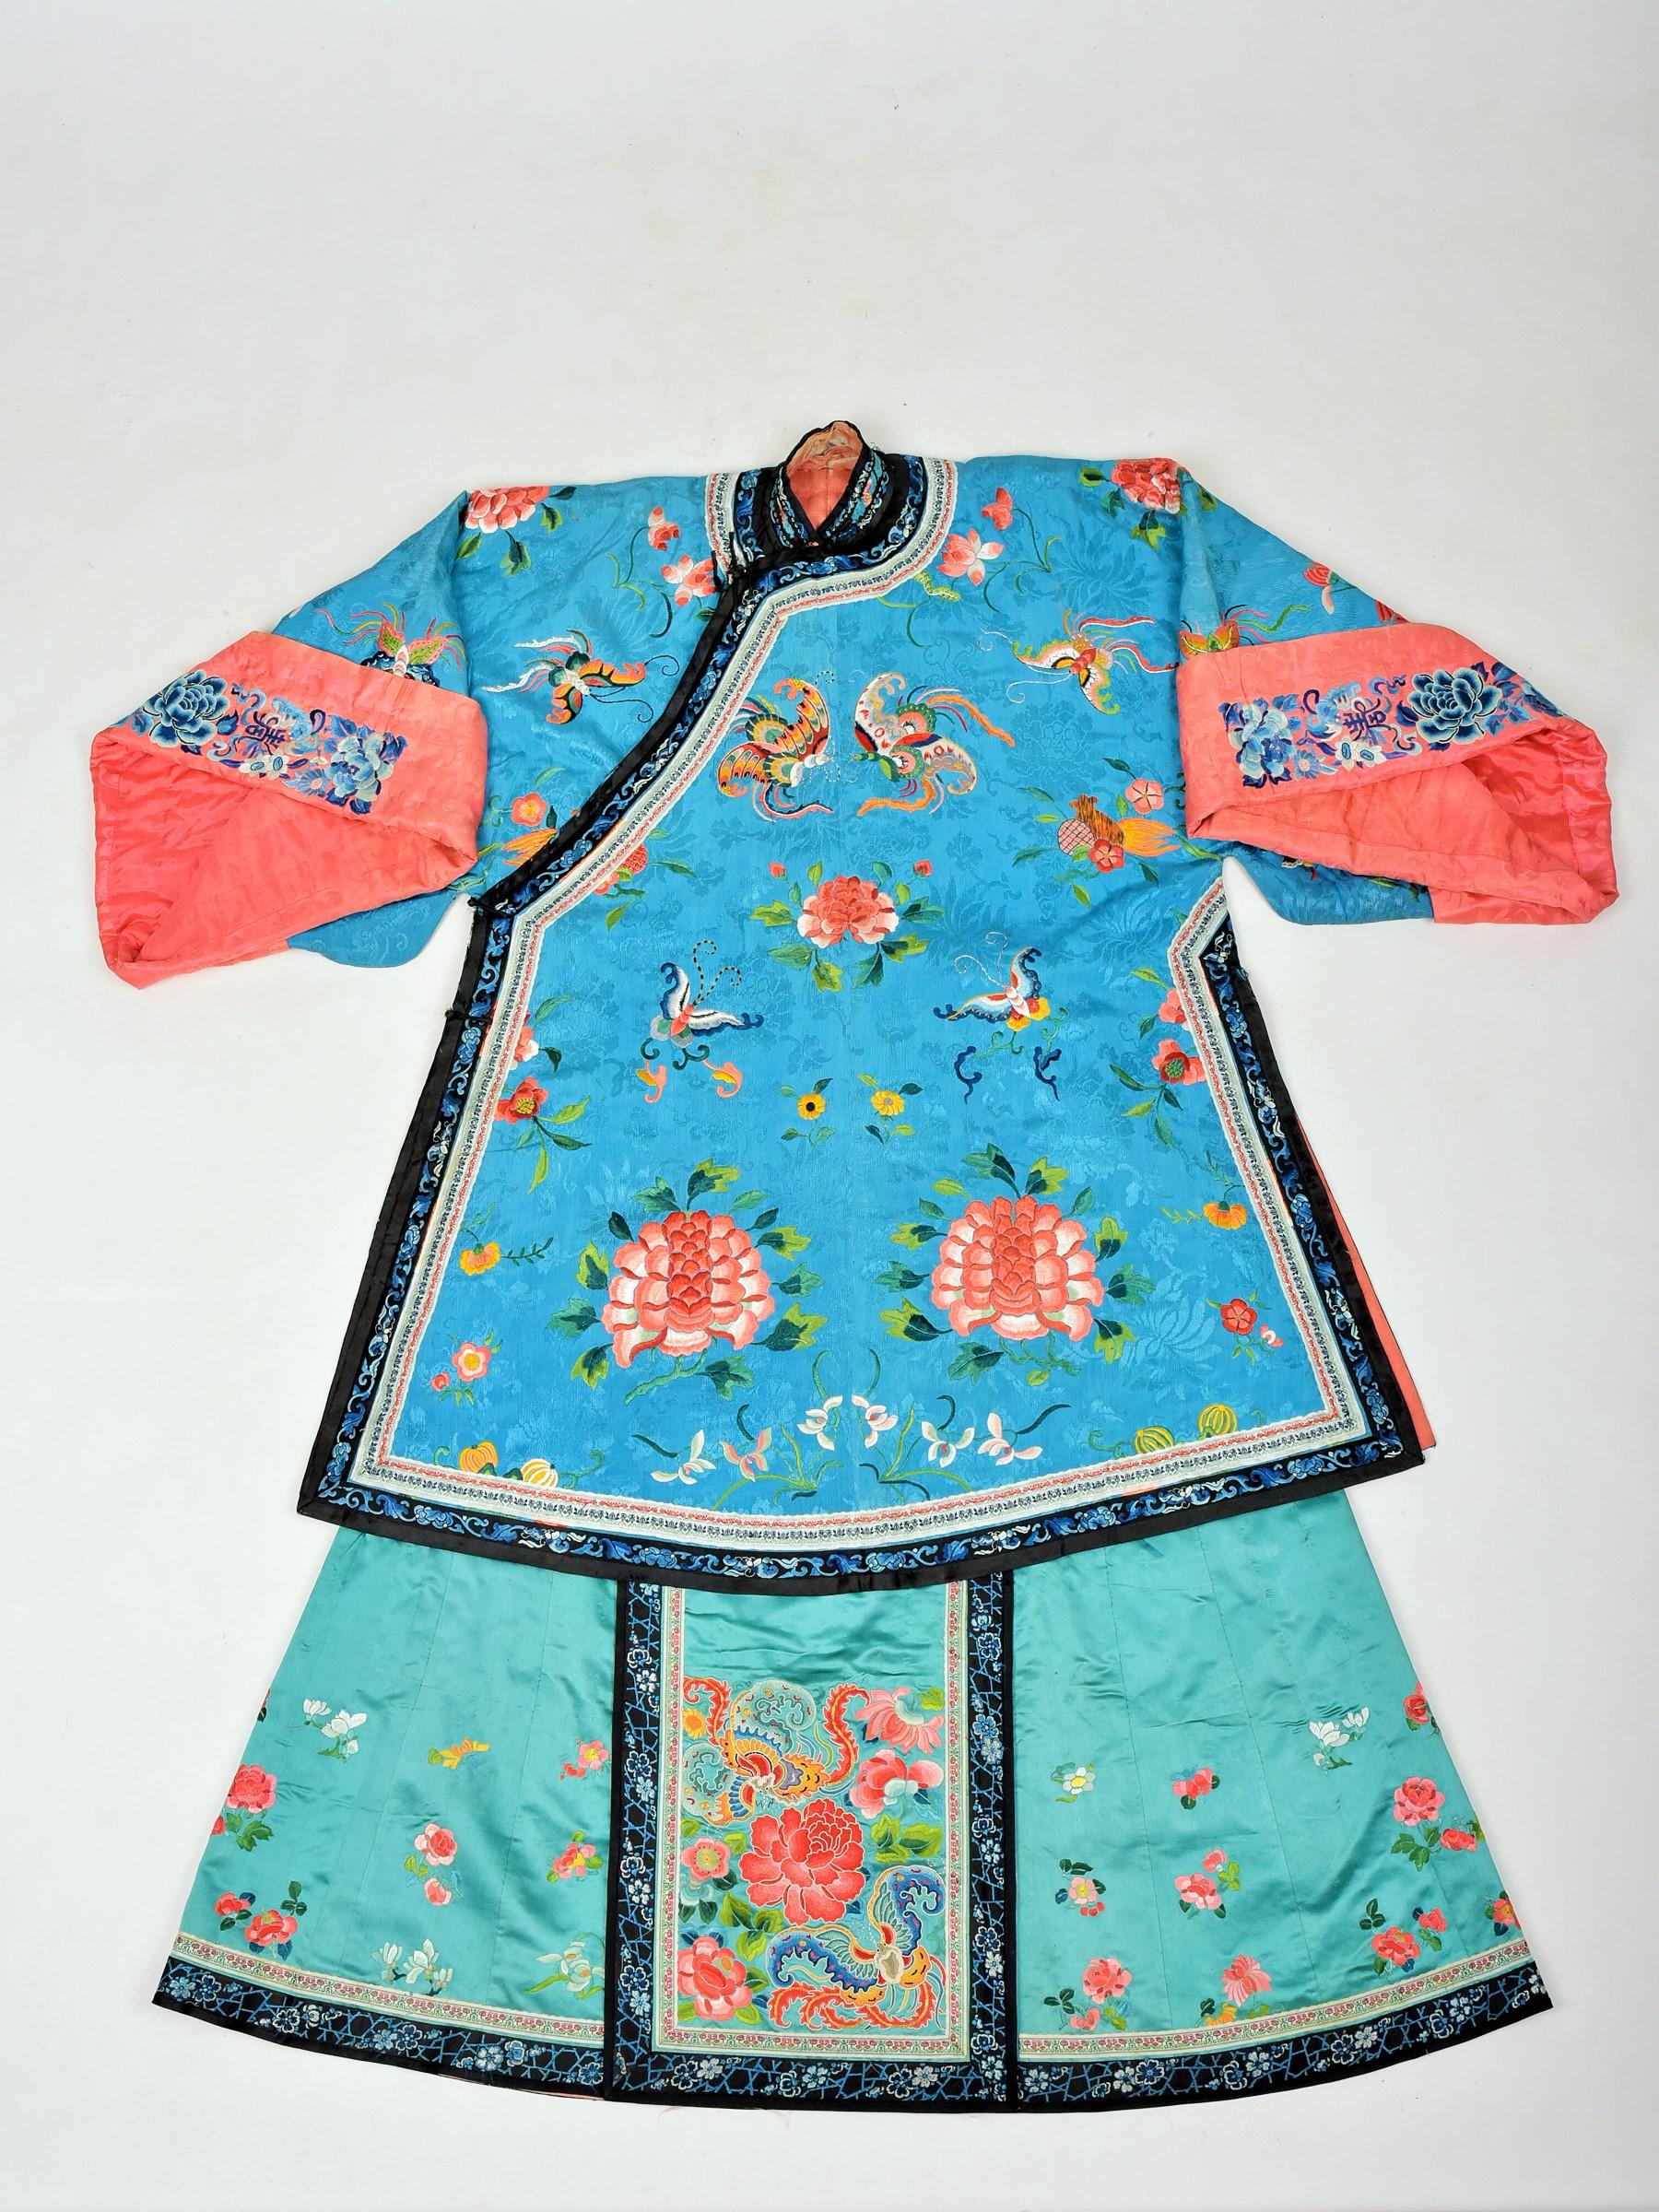 manchu dress